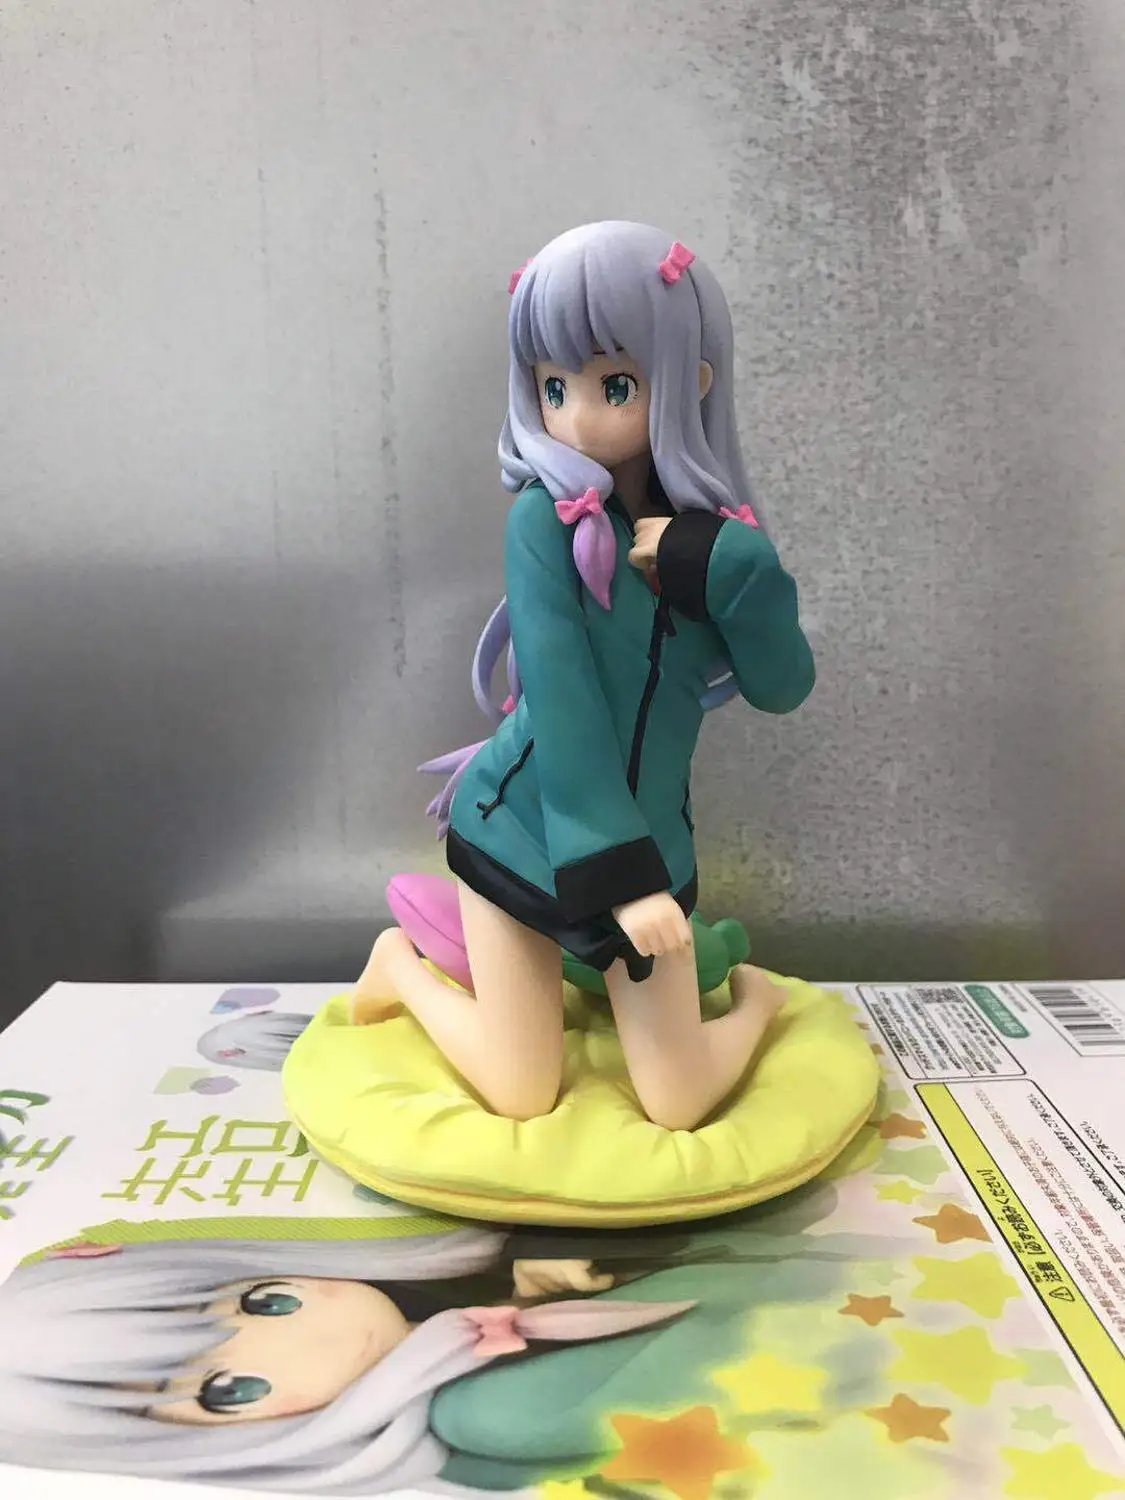 Новая фигурка 14 см-18 см японского аниме "eromanga-Sensei" фигурка Идзуми сагири Милая сексуальная девушка фигурка игрушка модель Фигурка - Цвет: Зеленый